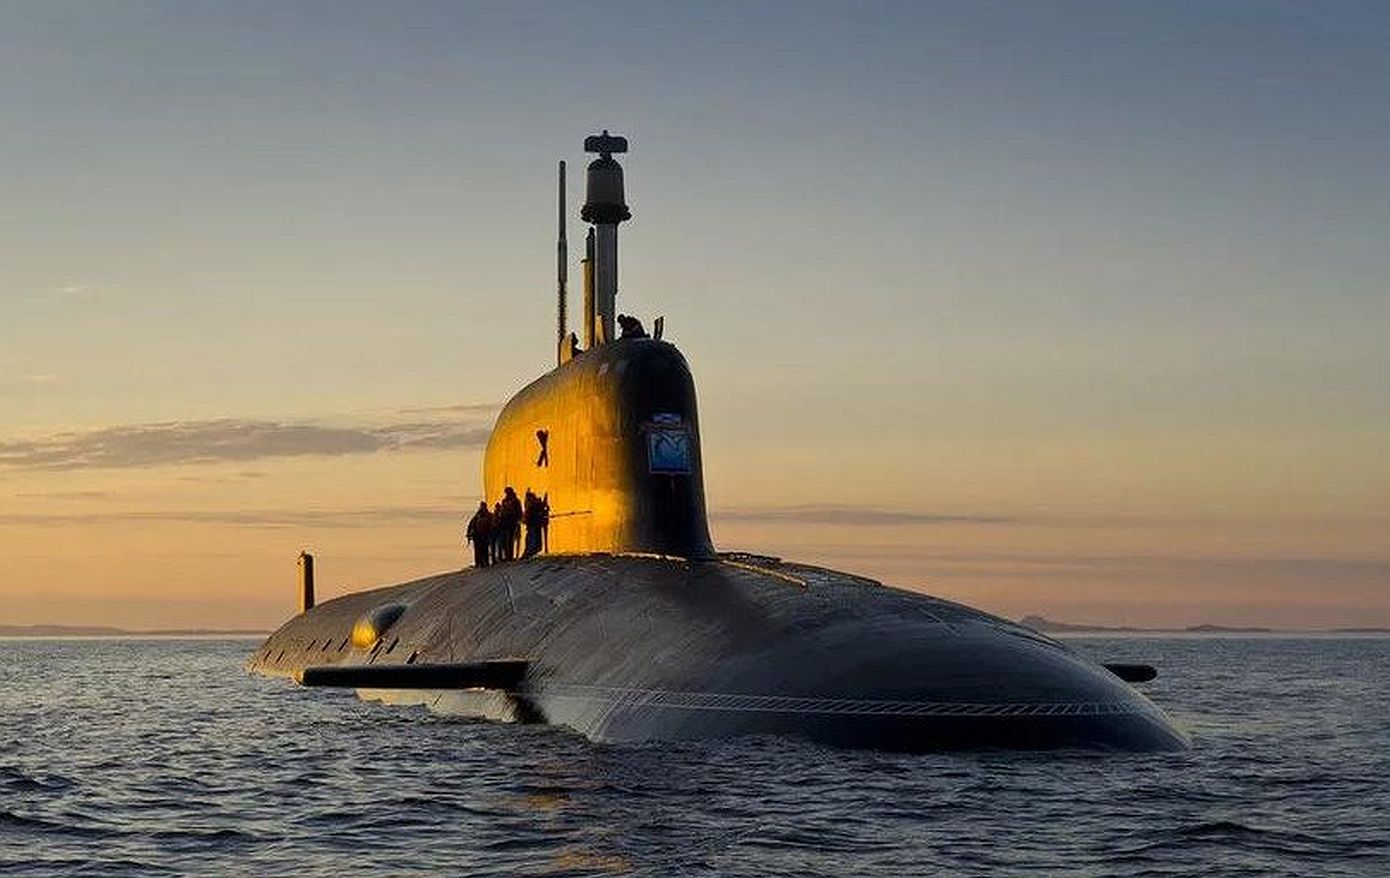 Πυραυλικές δοκιμές στον Ατλαντικό Ωκεανό από μια φρεγάτα και ένα πυρηνοκίνητο υποβρύχιο του ρωσικού Πολεμικού Ναυτικού